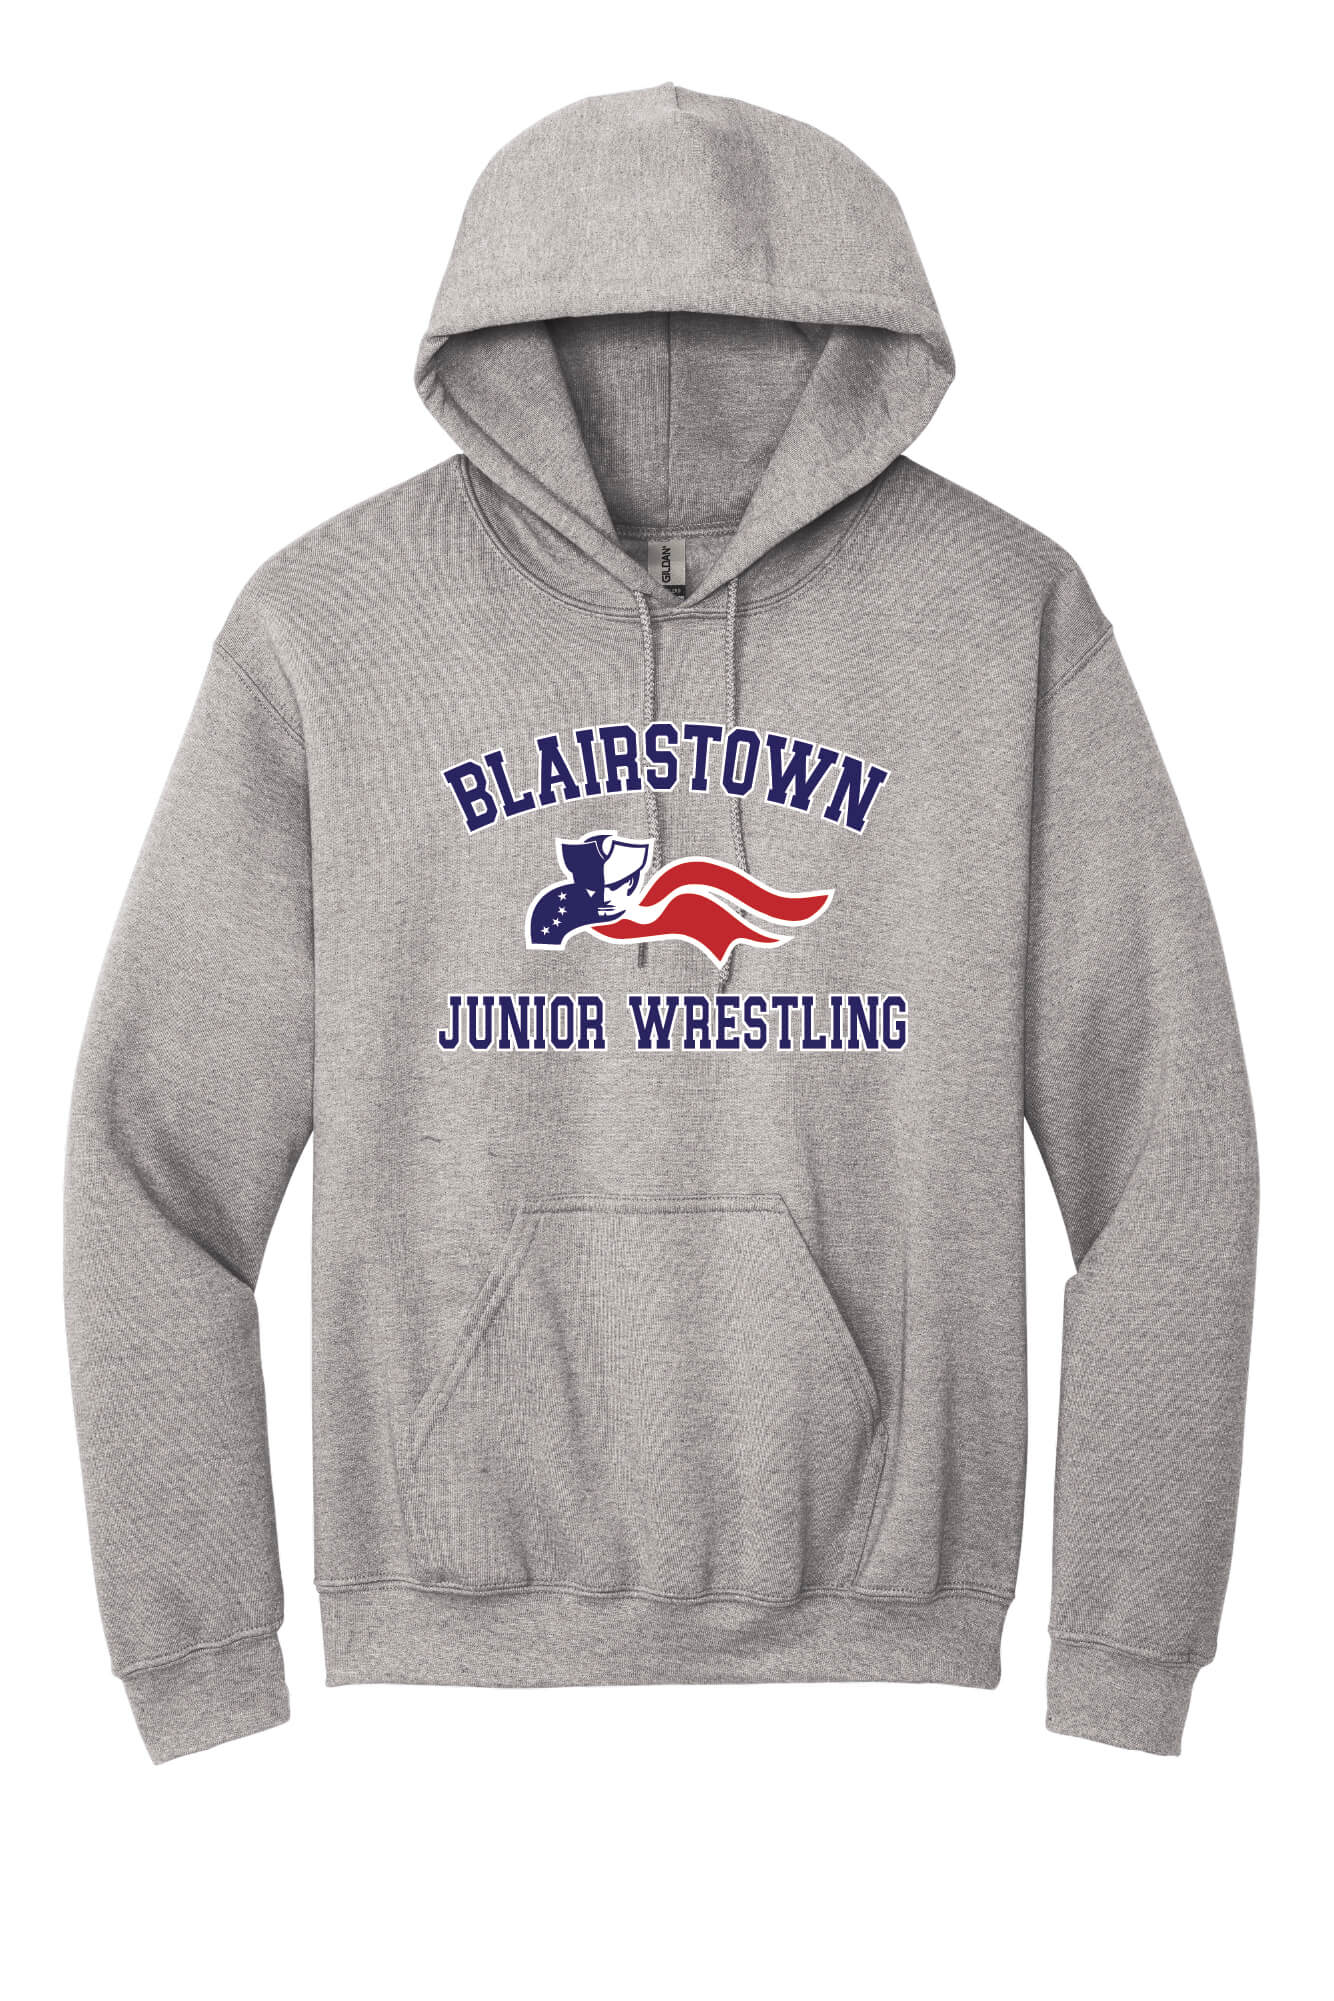 Blairstown JR Wrestling Hoodie (Youth) gray